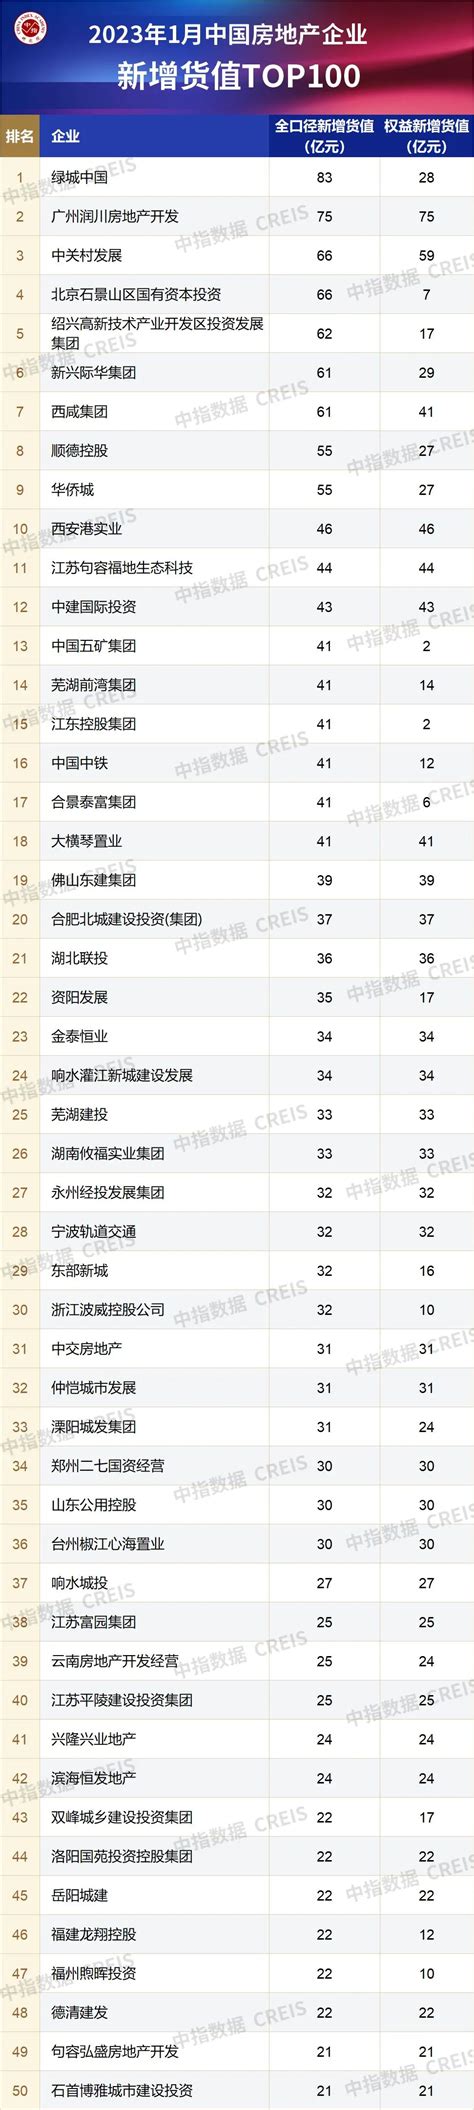 住在邢台·第1房产--2023年1月全国房地产企业拿地TOP100排行榜 - 住在邢台丨第1房产